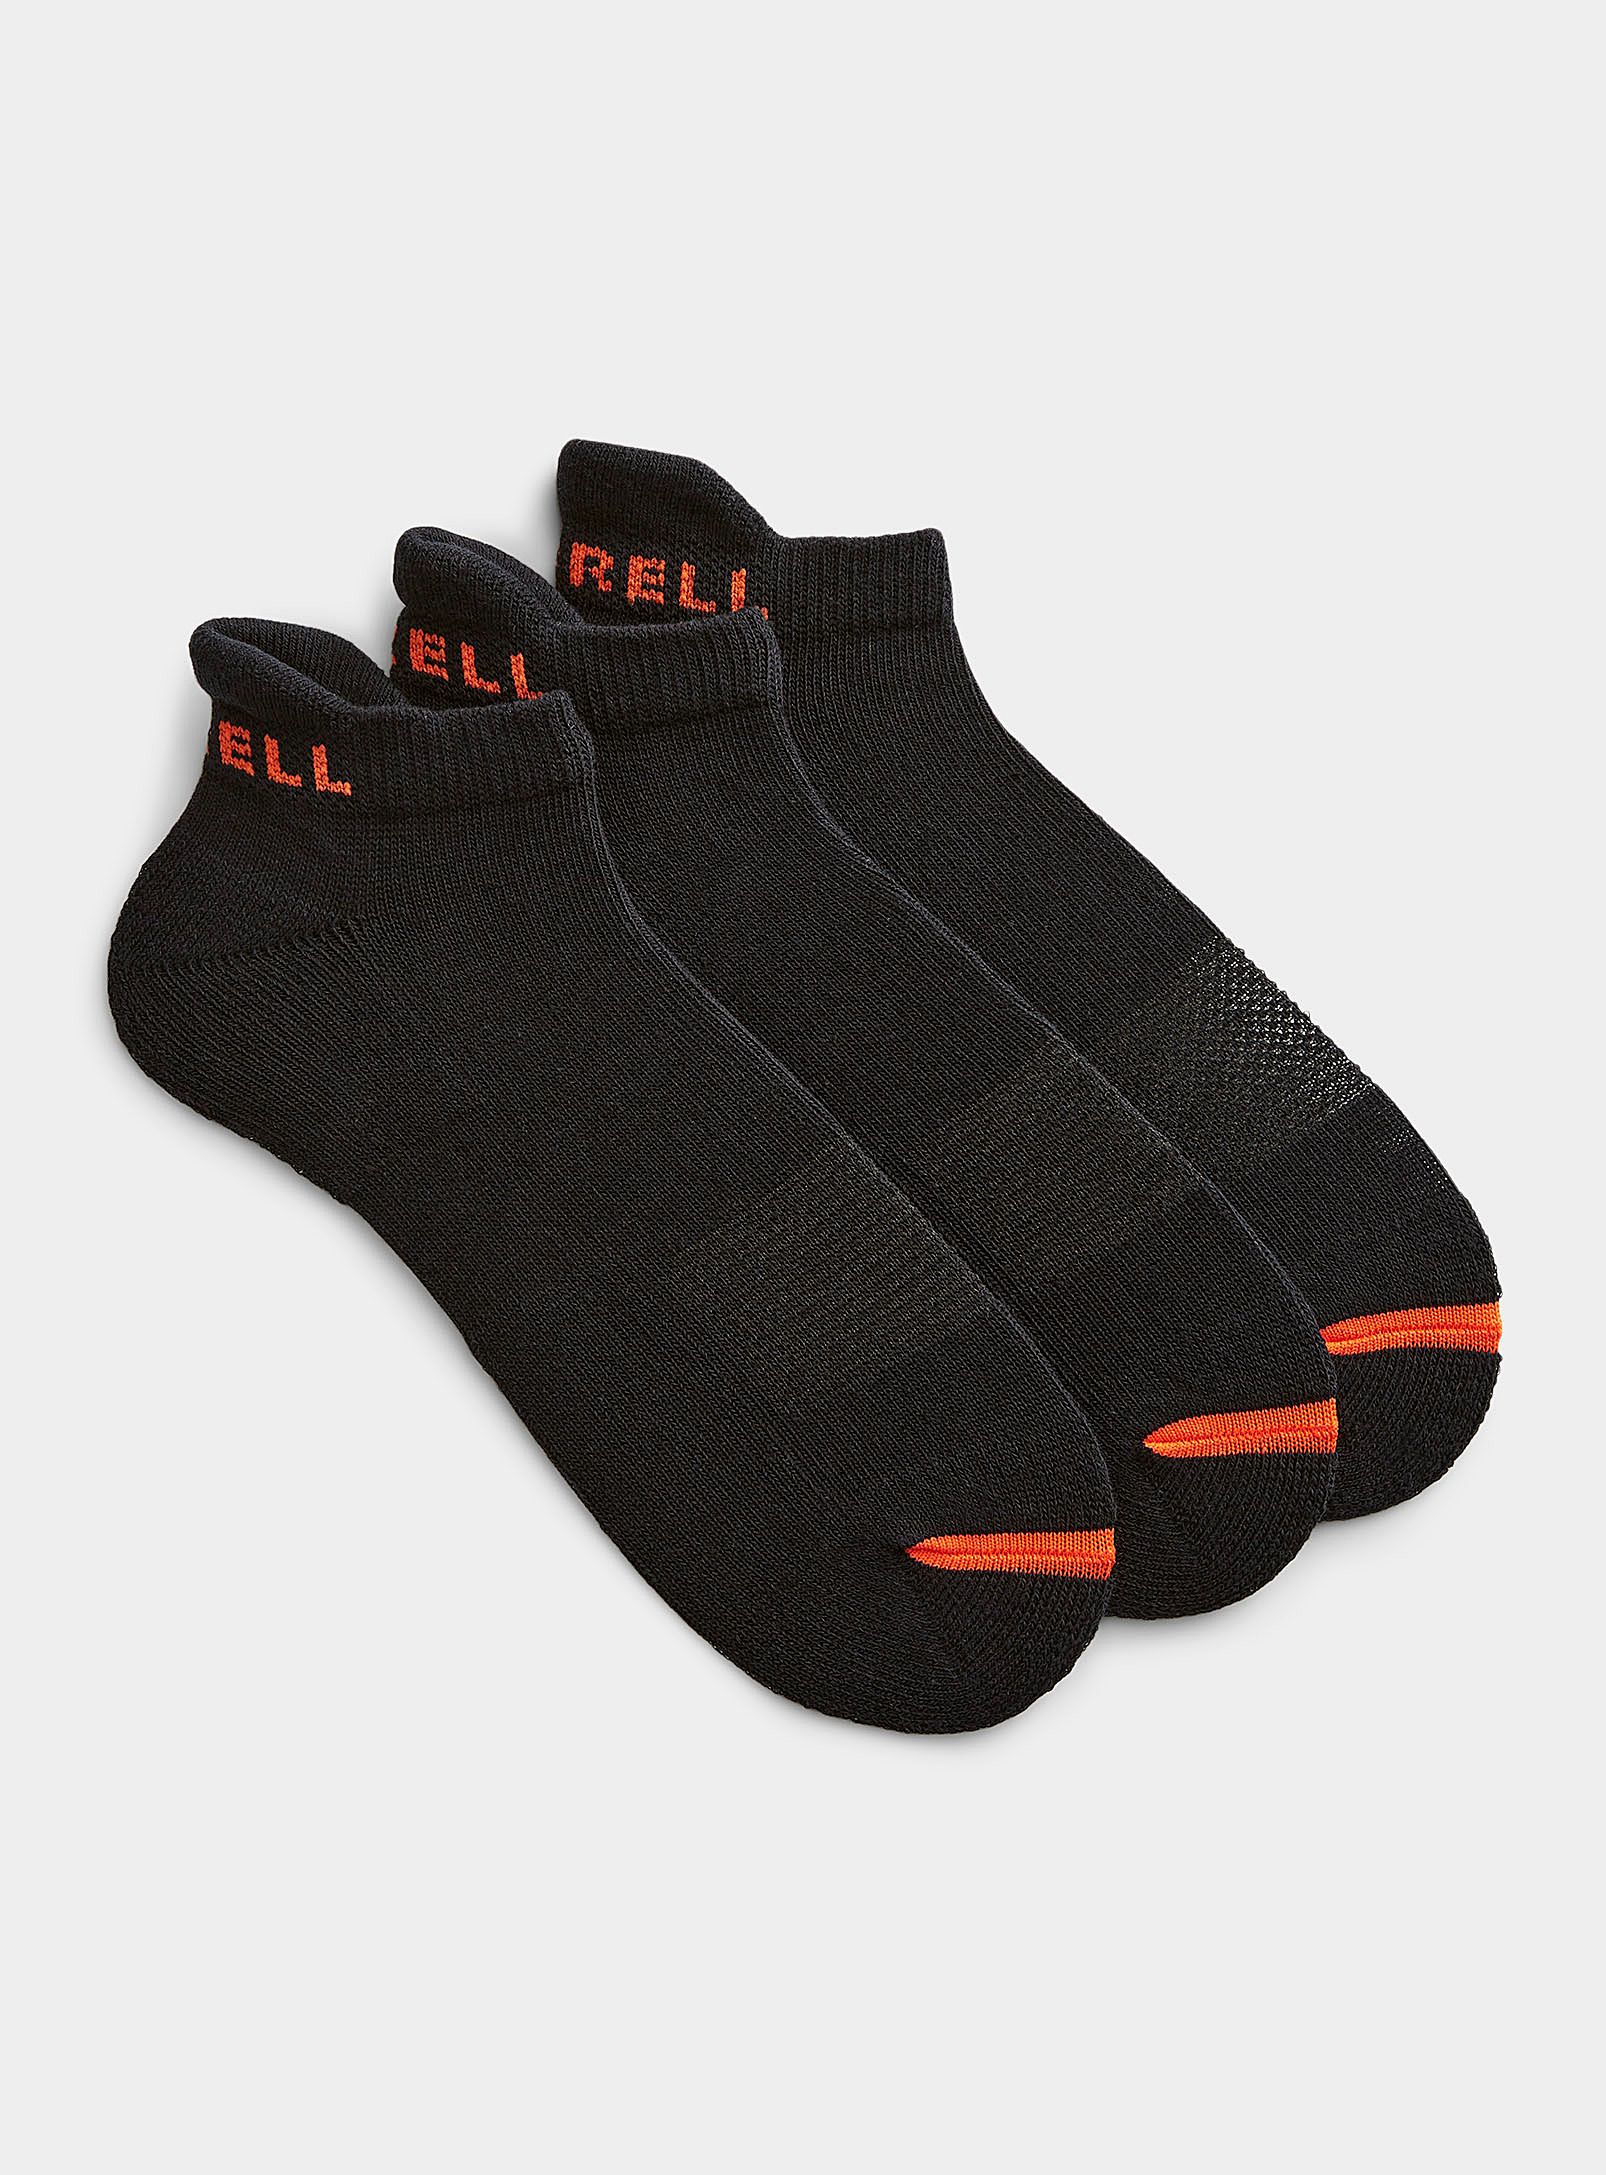 Merrell Performance Reinforced Ped Socks 3-pack In Black